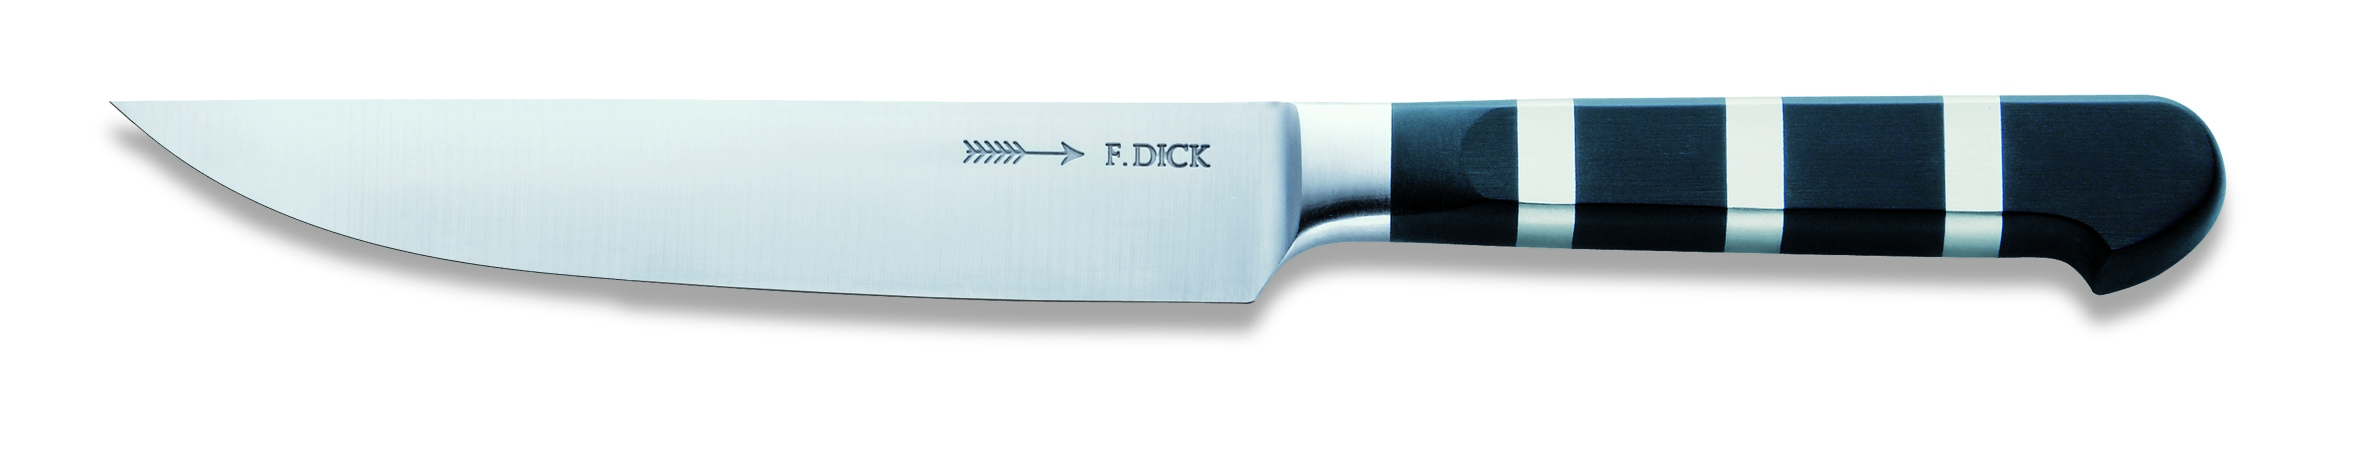 Steakový nůž s hladkou čepelí ze série 1905 v délce 12 cm